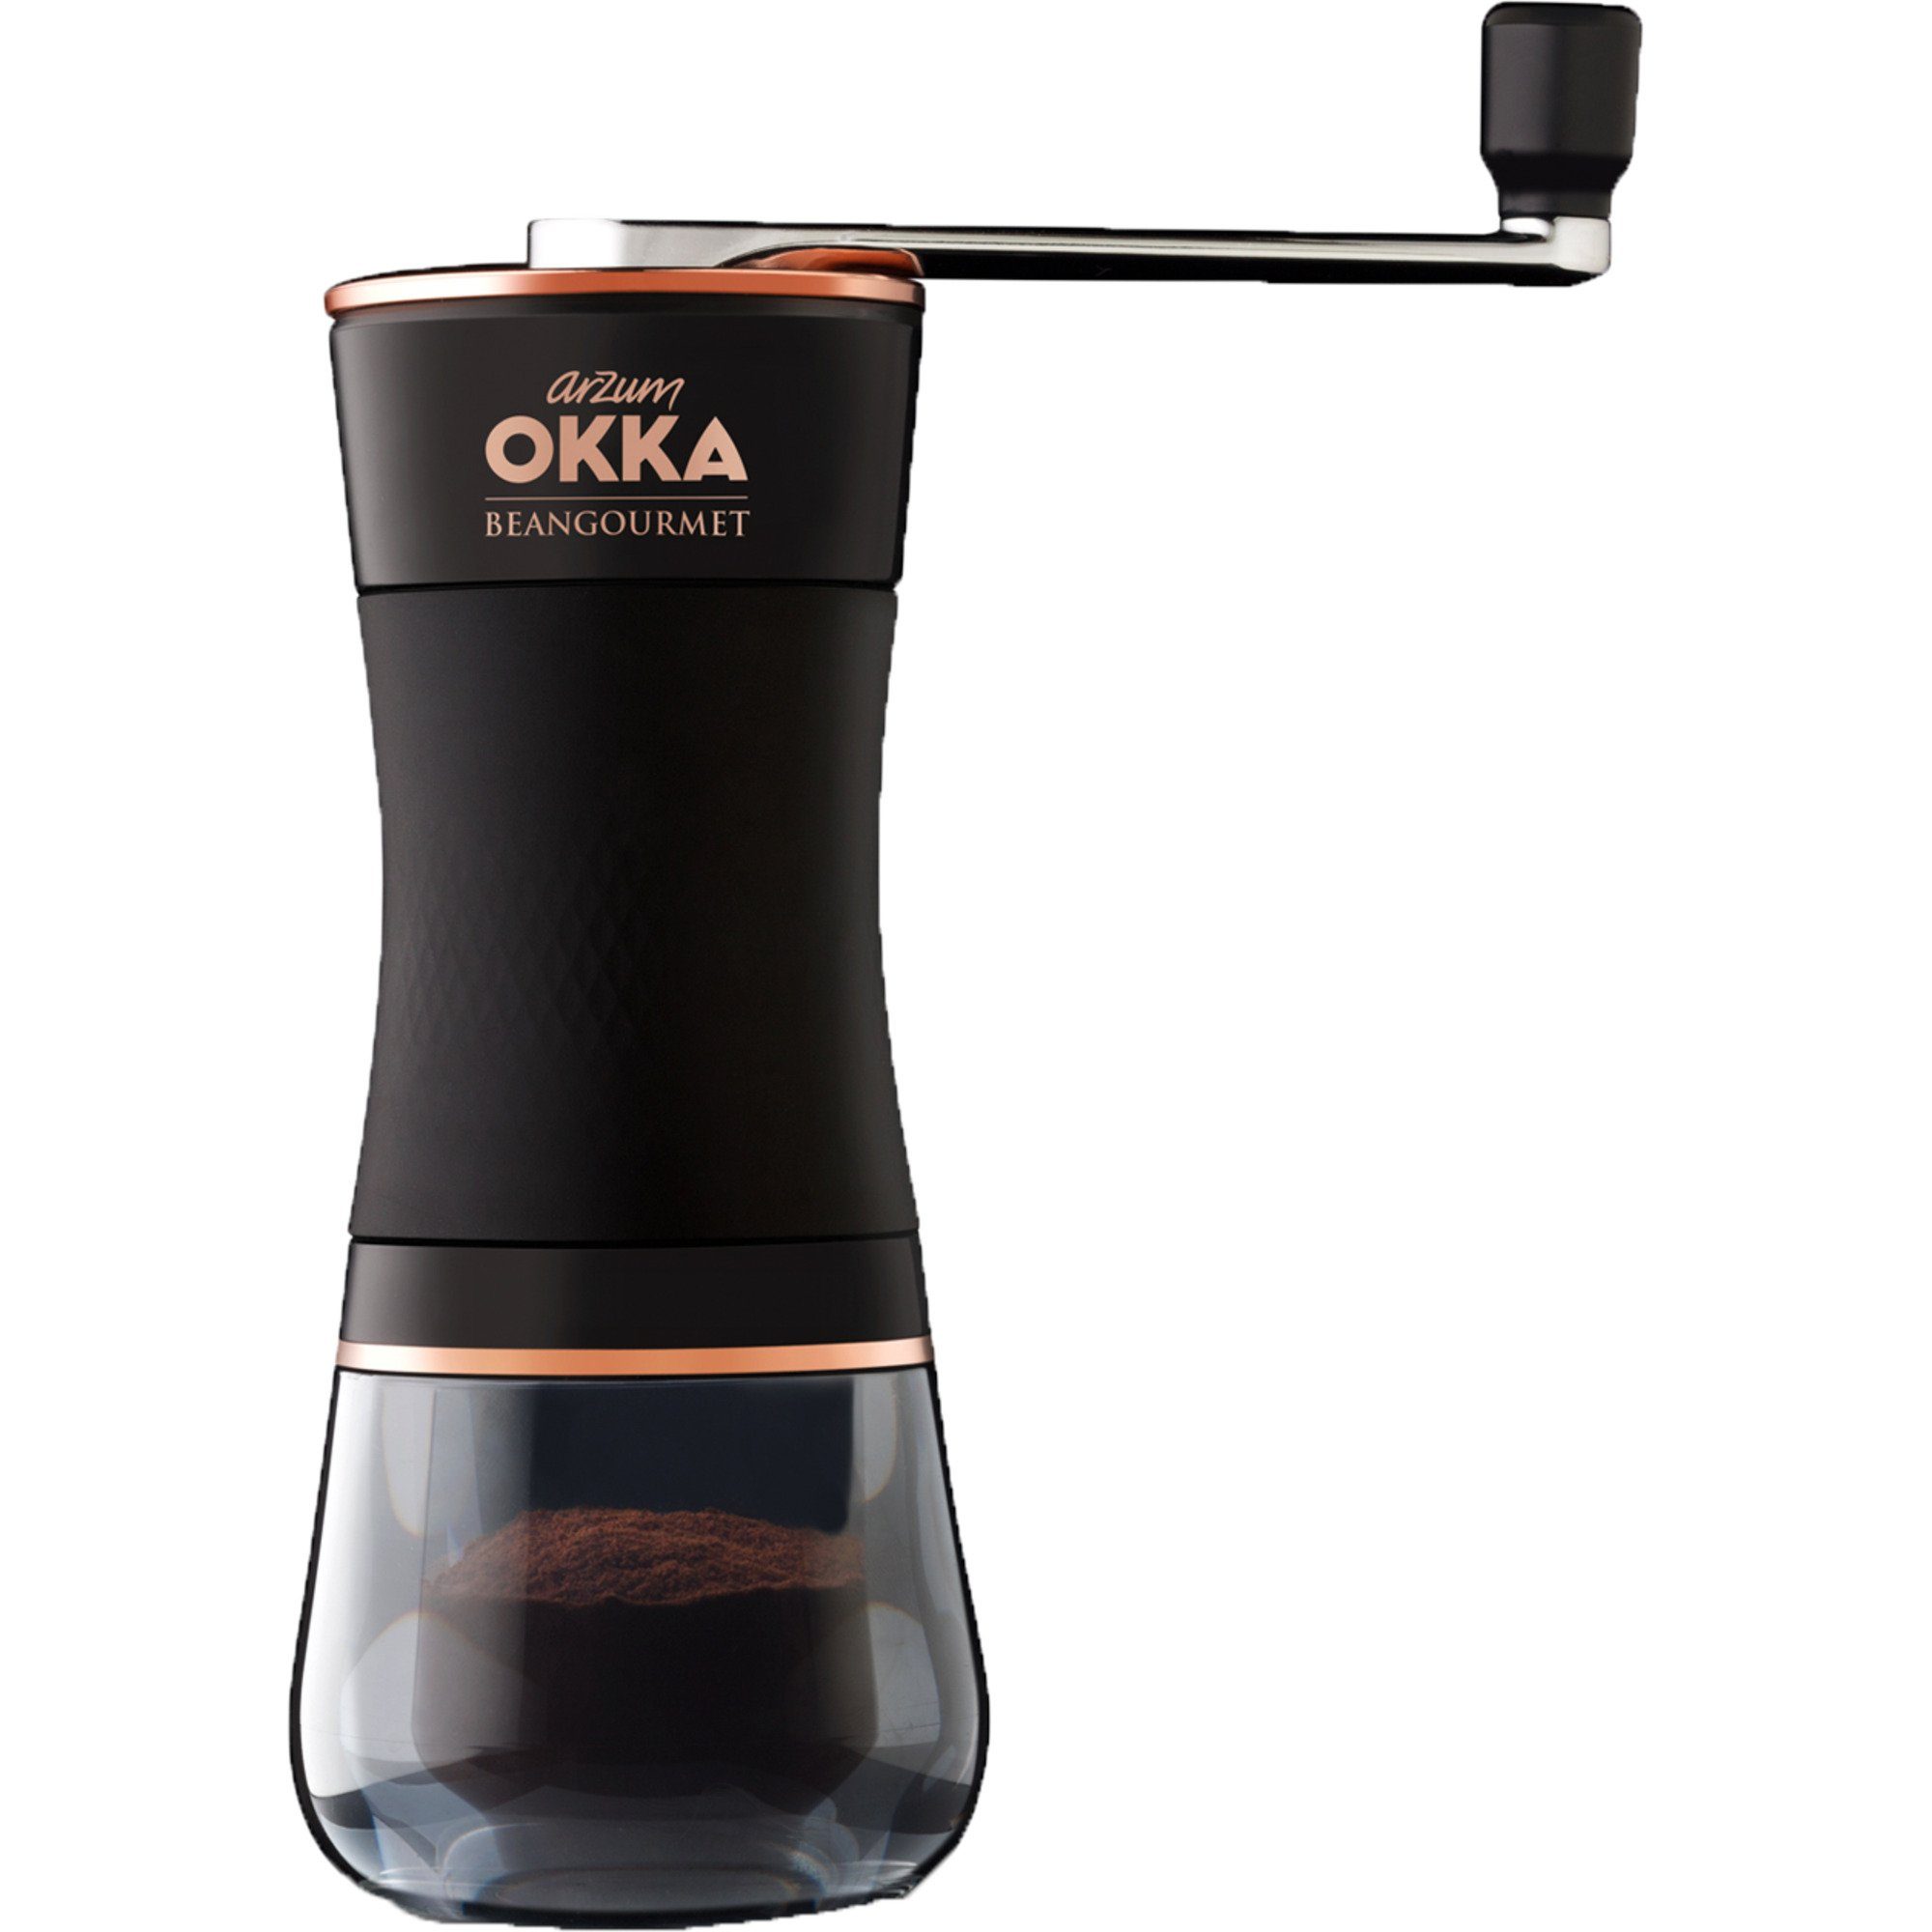 OK003-Beangourmet Arzum OKKA Arzum Kaffeebereiter Kaffeemühle